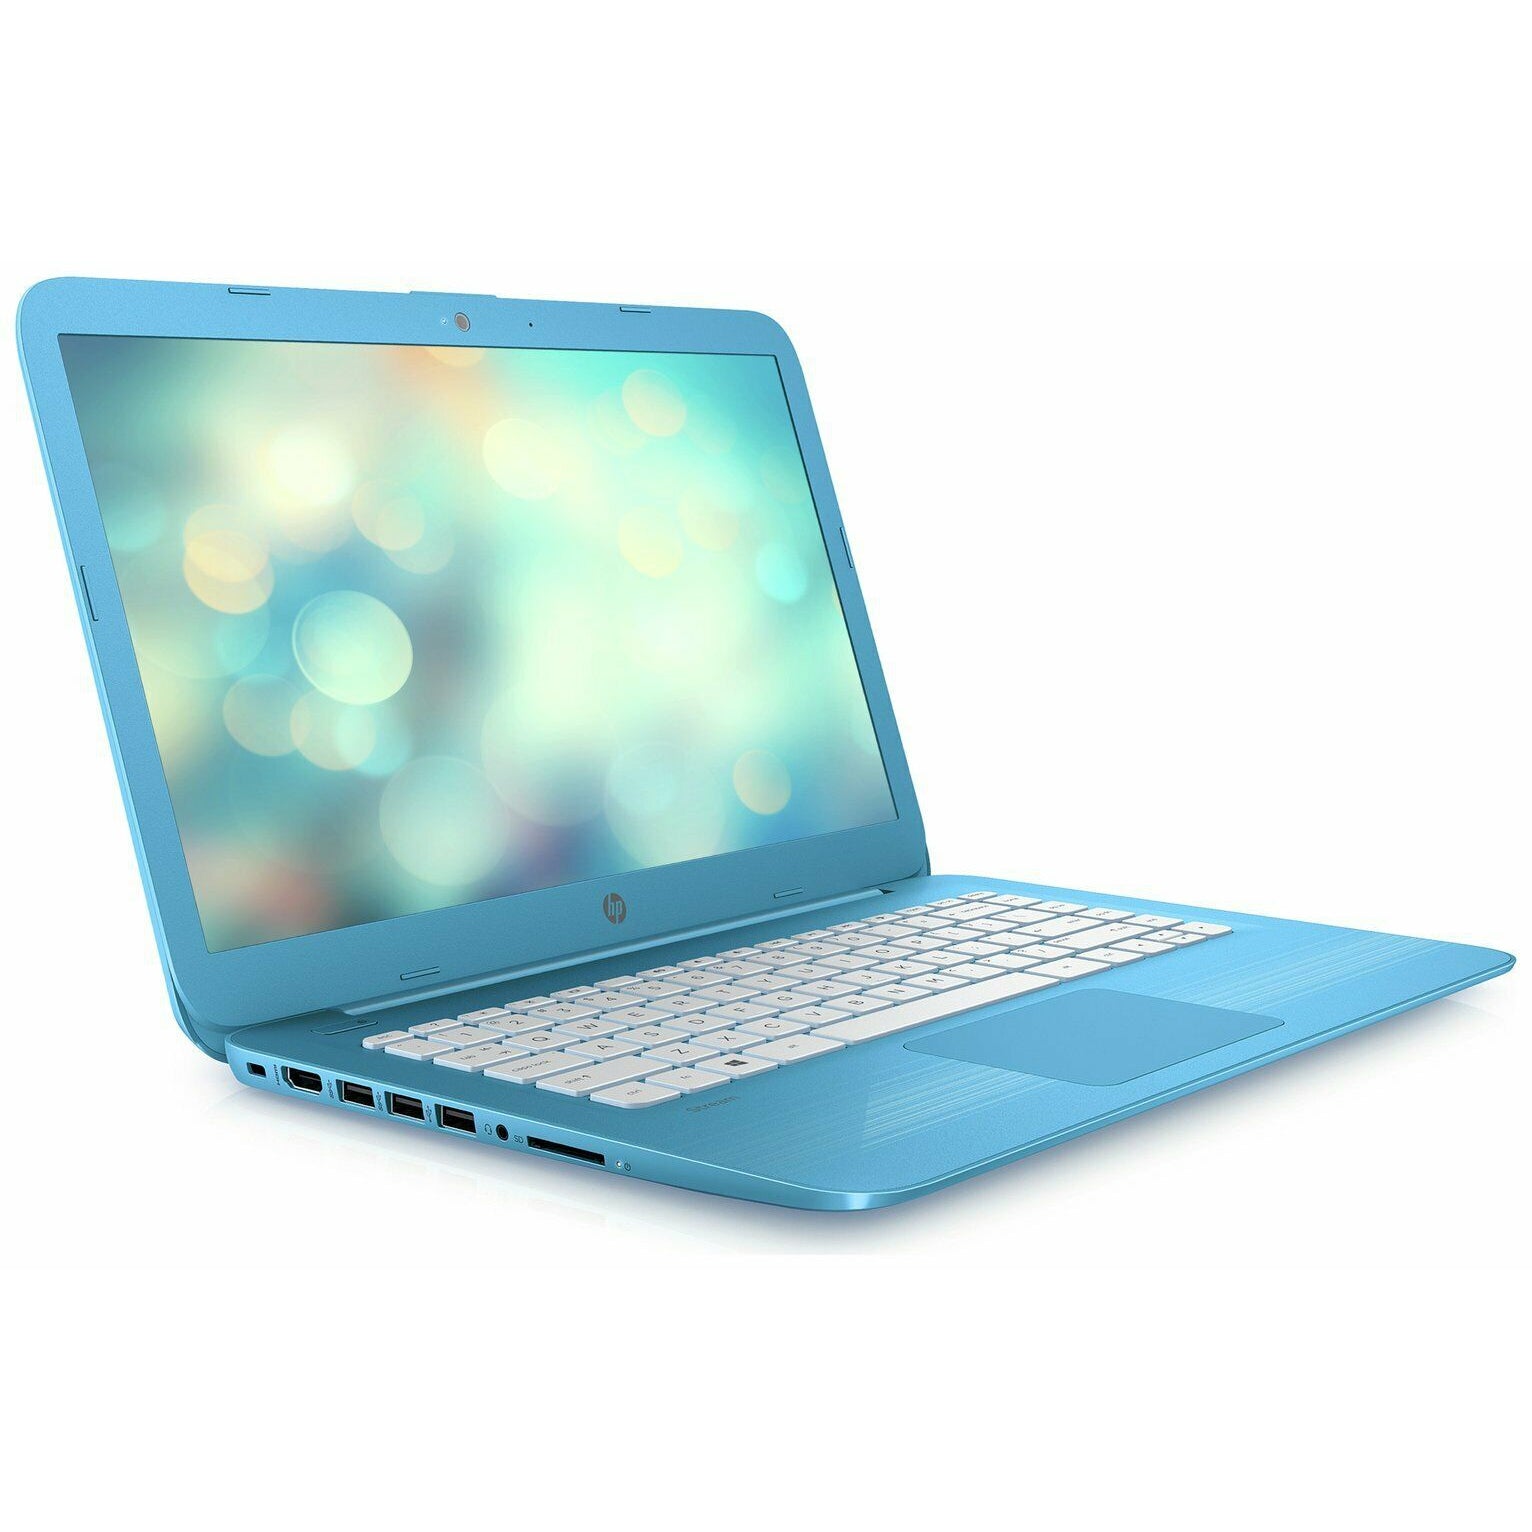 HP Stream 14-ax000na 14” (32GB eMMC, Intel Celeron N3060, 1.6 GHz, 4GB) Laptop - Aqua Blue - X9W65EA#ABU